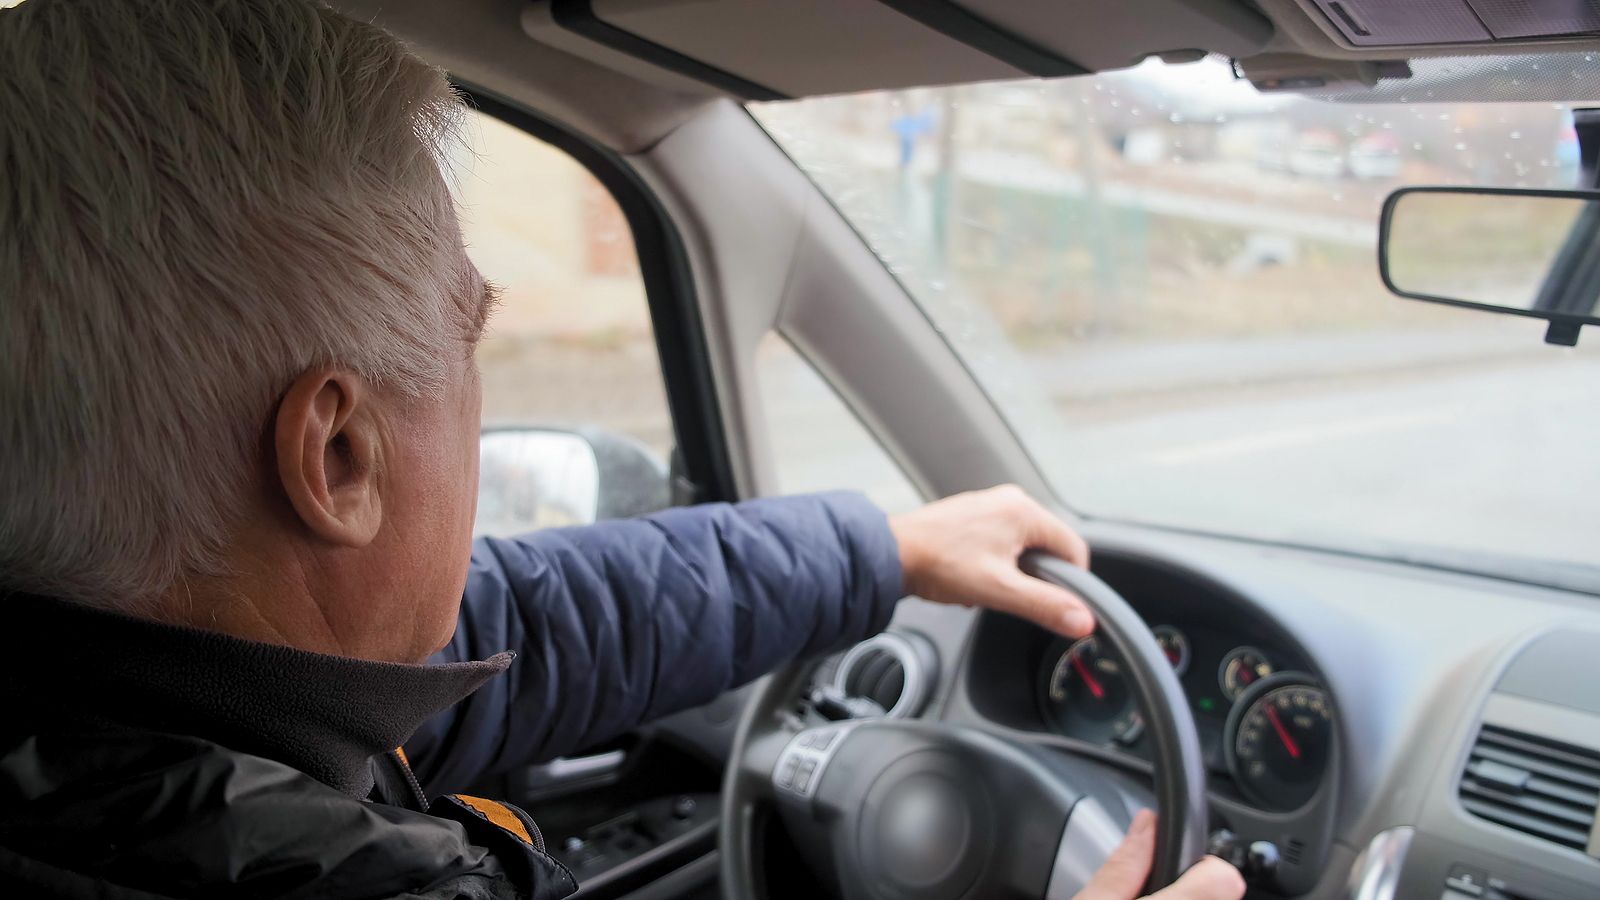 Respuesta de los mayores a la propuesta de limitar la edad para conducir: “Basta de discriminarnos"